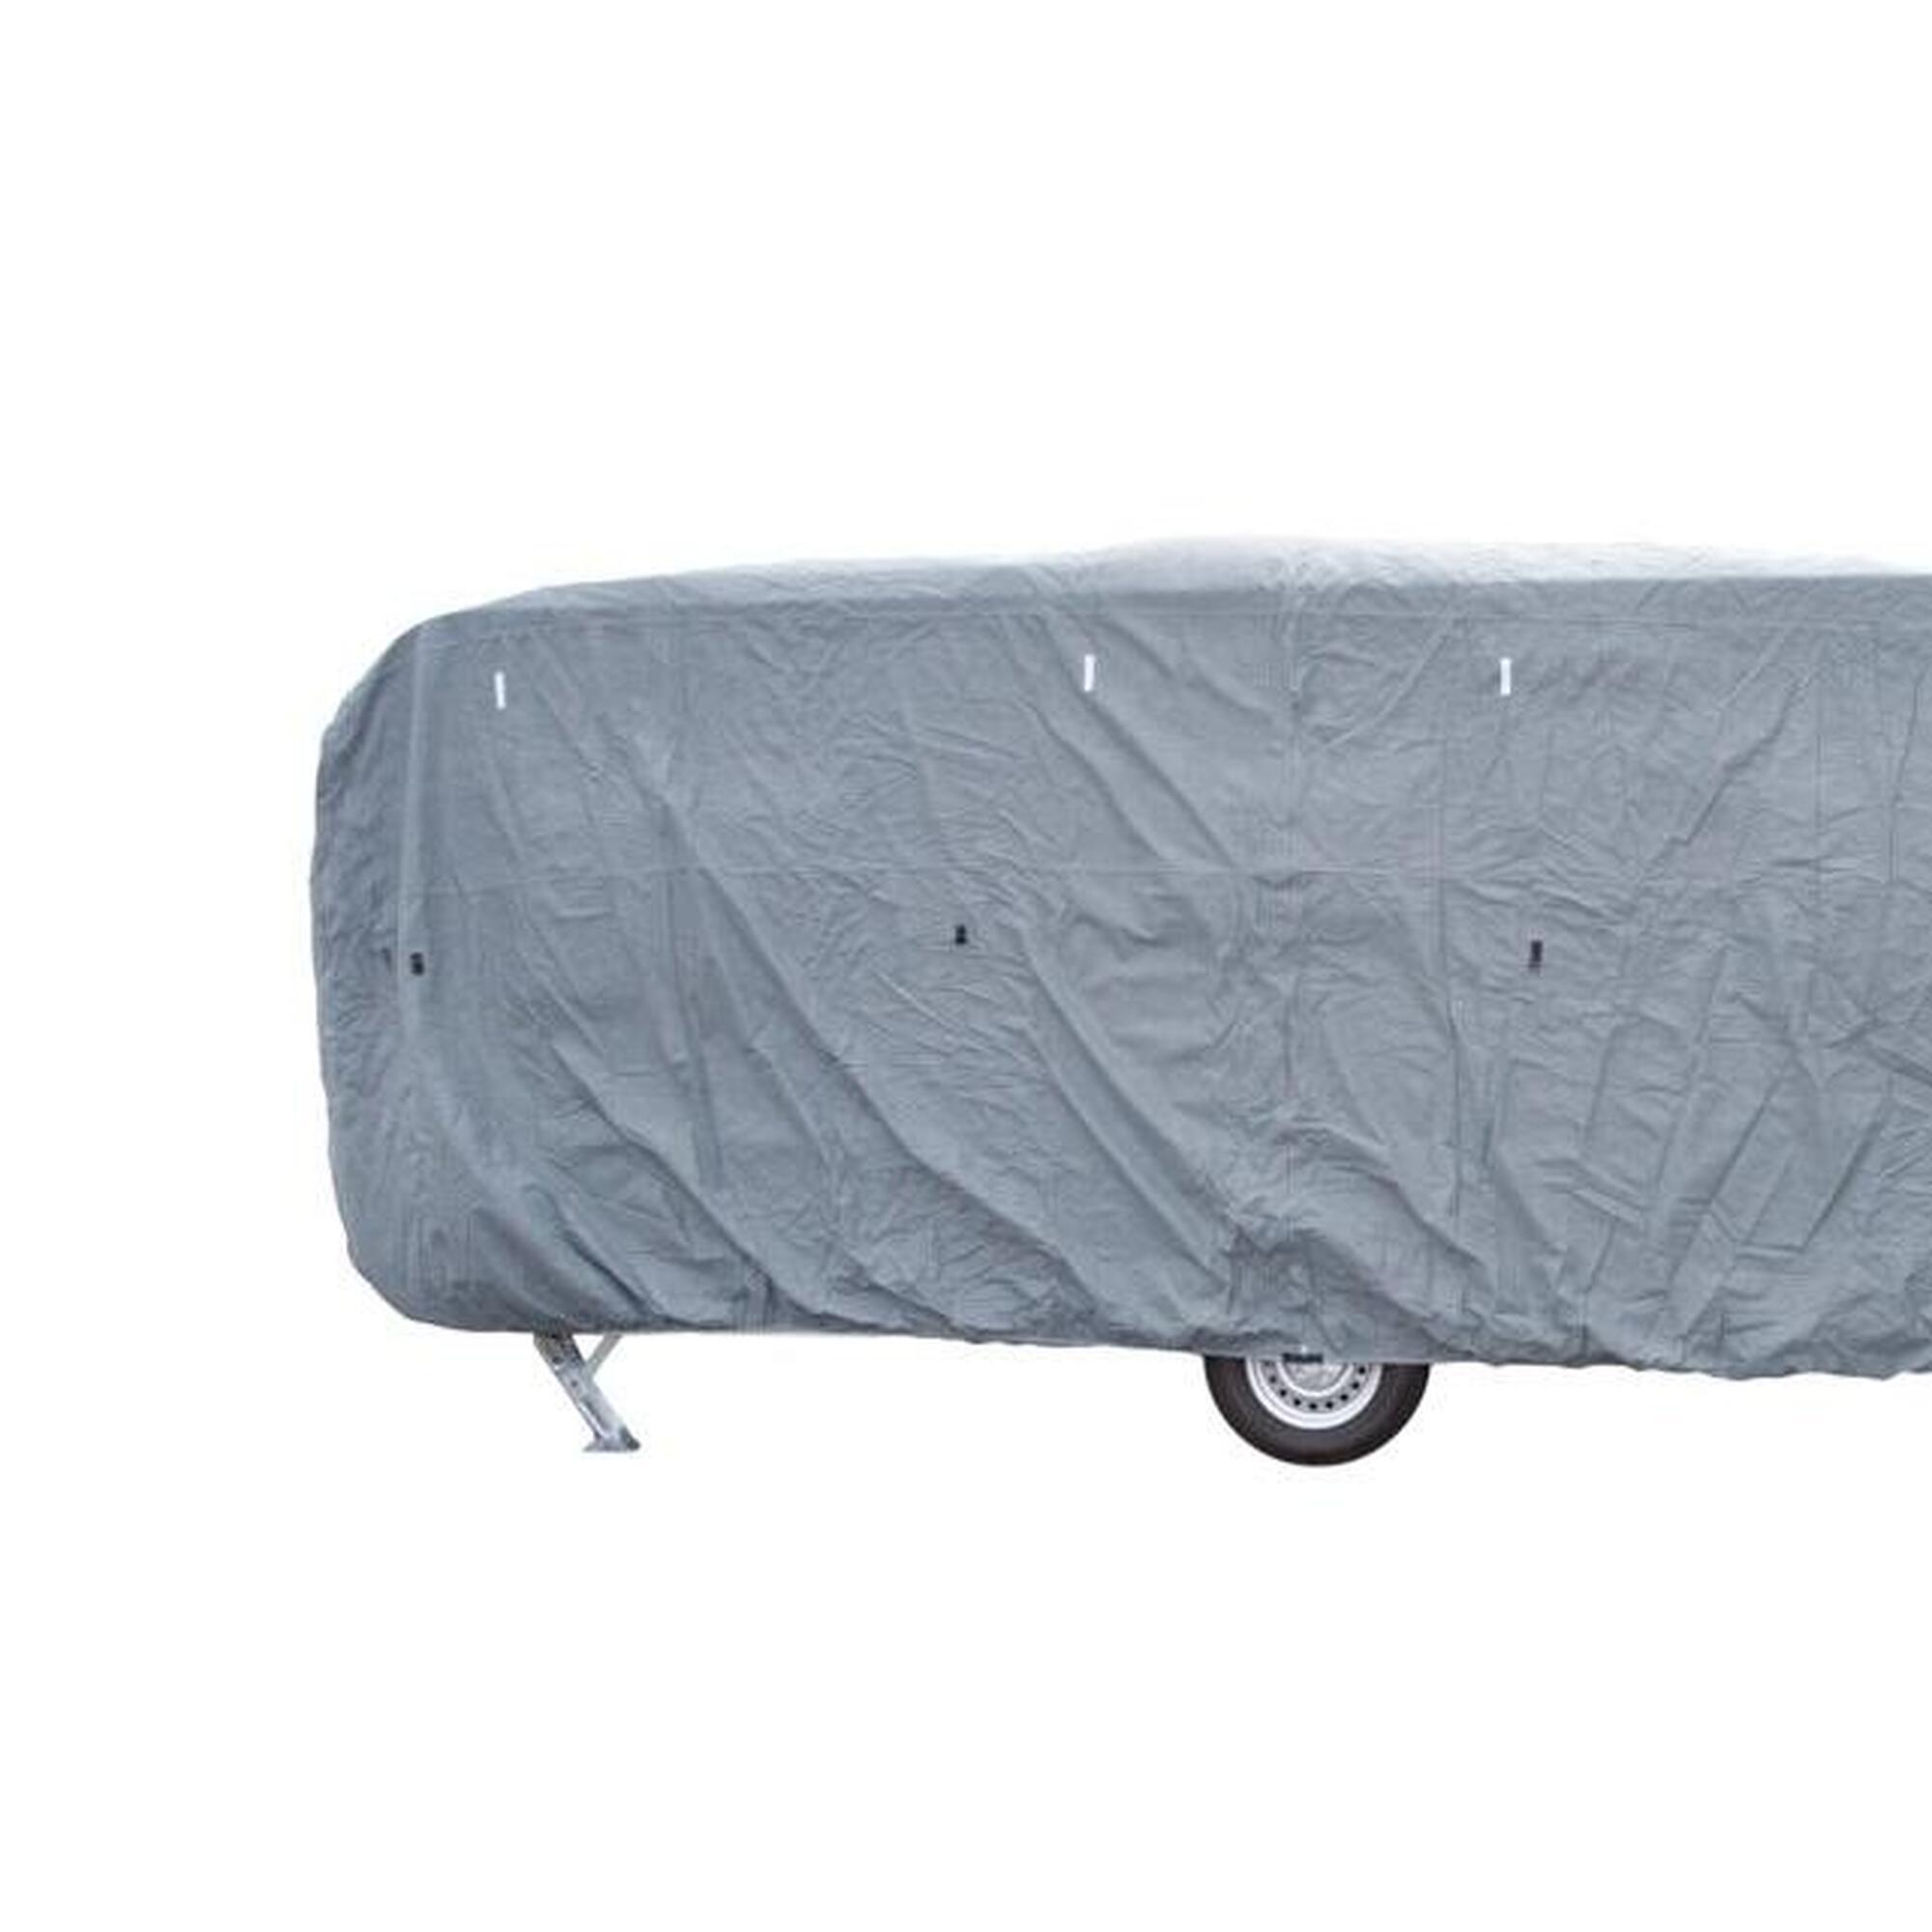 Travellife caravane couverture basic 500x240x220cm